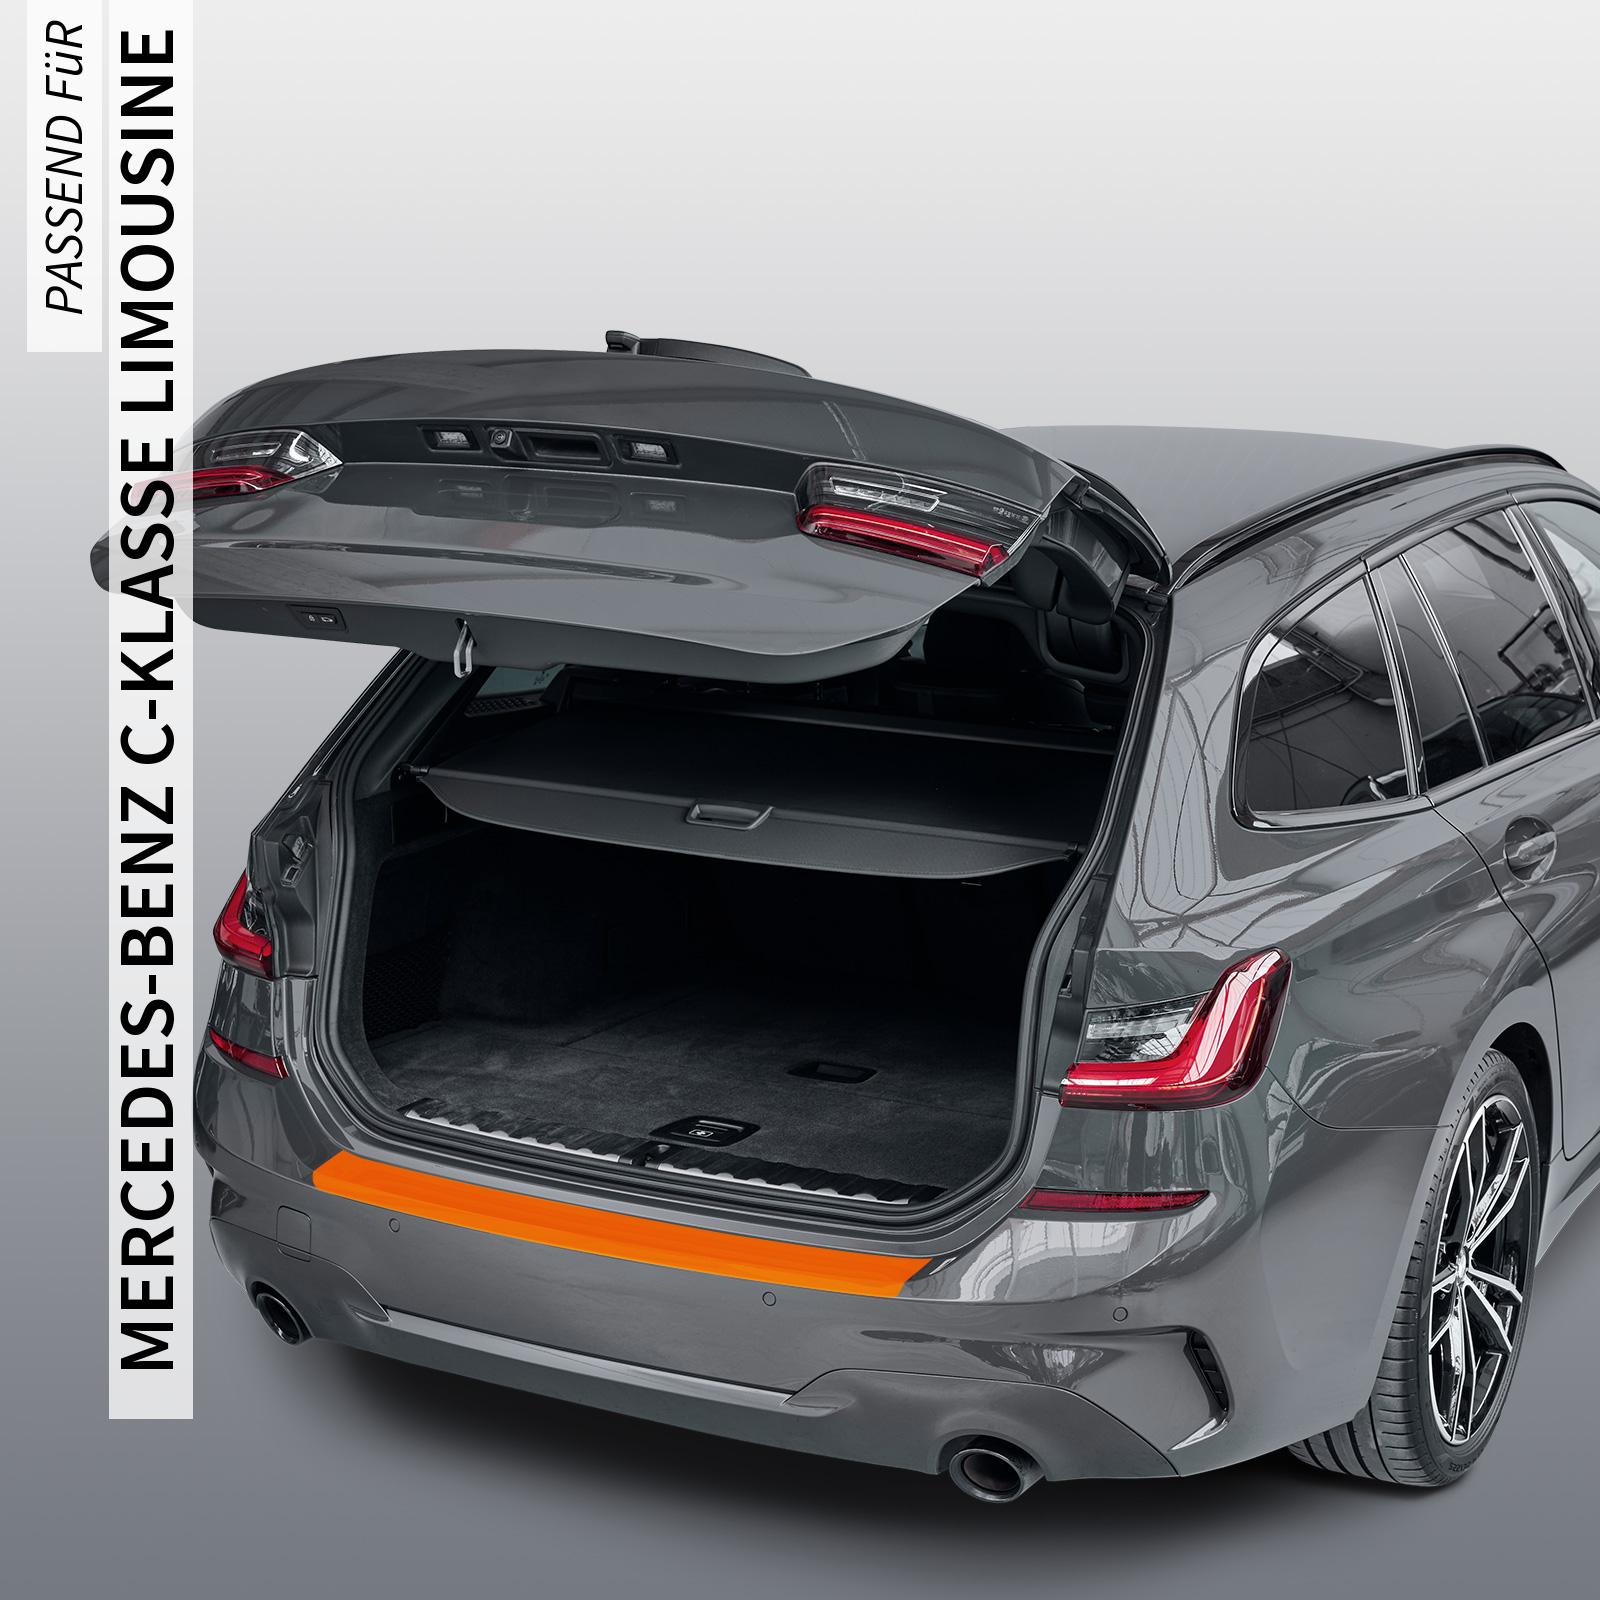 Ladekantenschutzfolie - Transparent Glatt MATT 110 µm stark  für Mercedes-Benz C-Klasse Limousine Typ W204, BJ 2007-2013